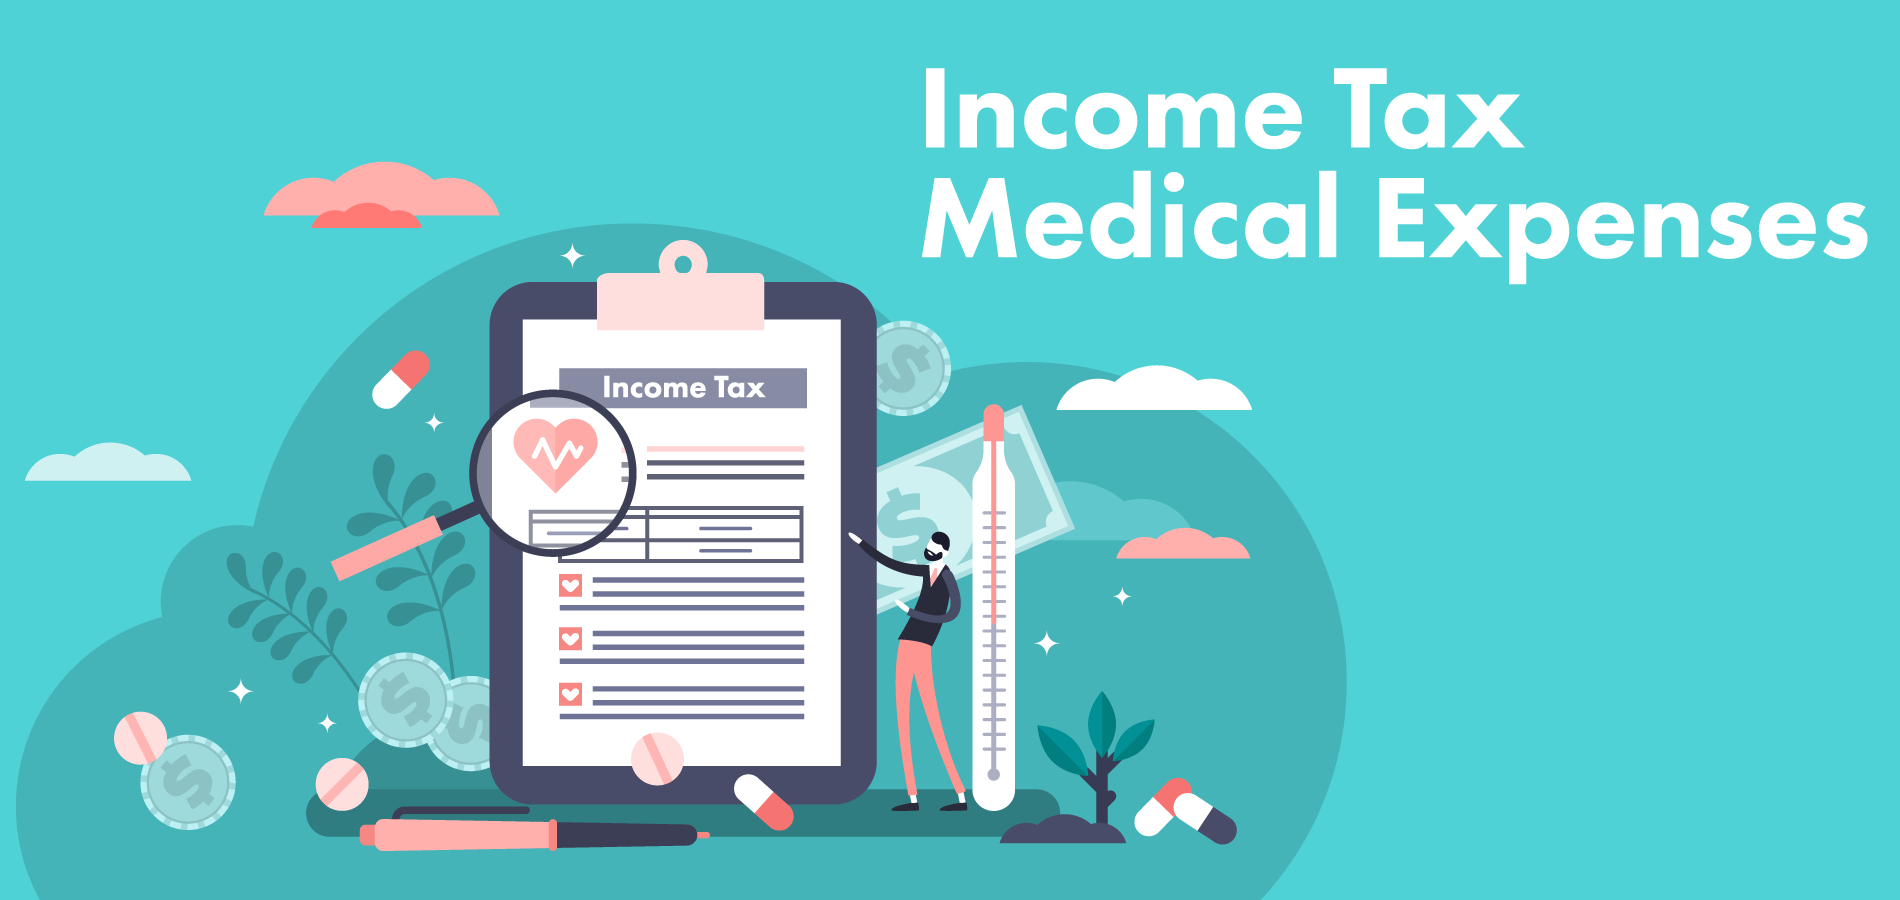 How do you claim tax medical expenses?